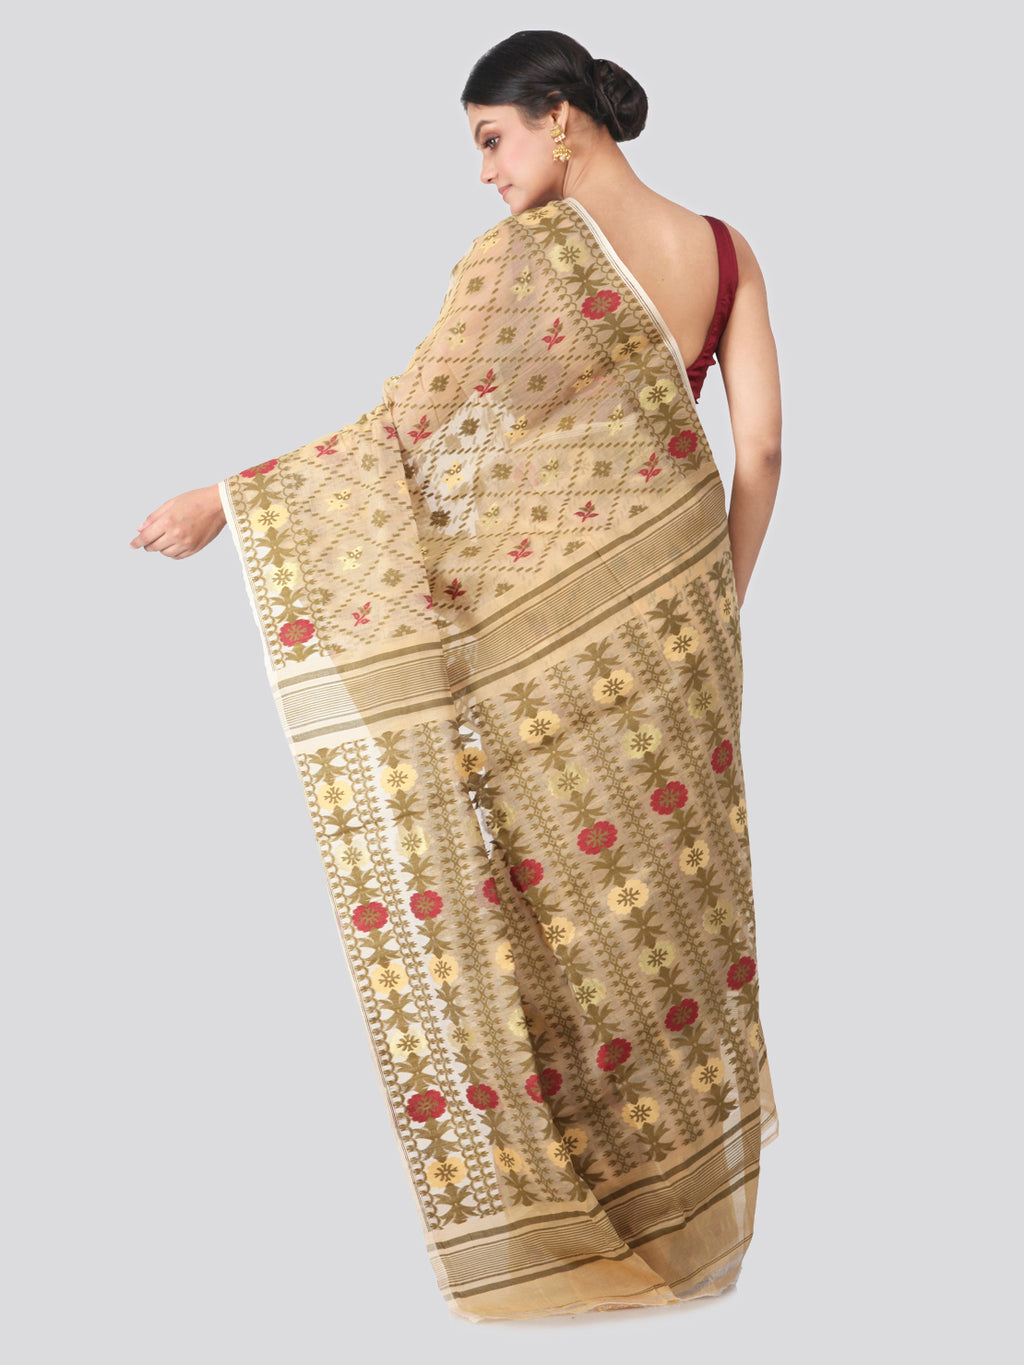 Cotton Soft Minakari Dhakai Jamdani Saree With Resham Fabric For Women